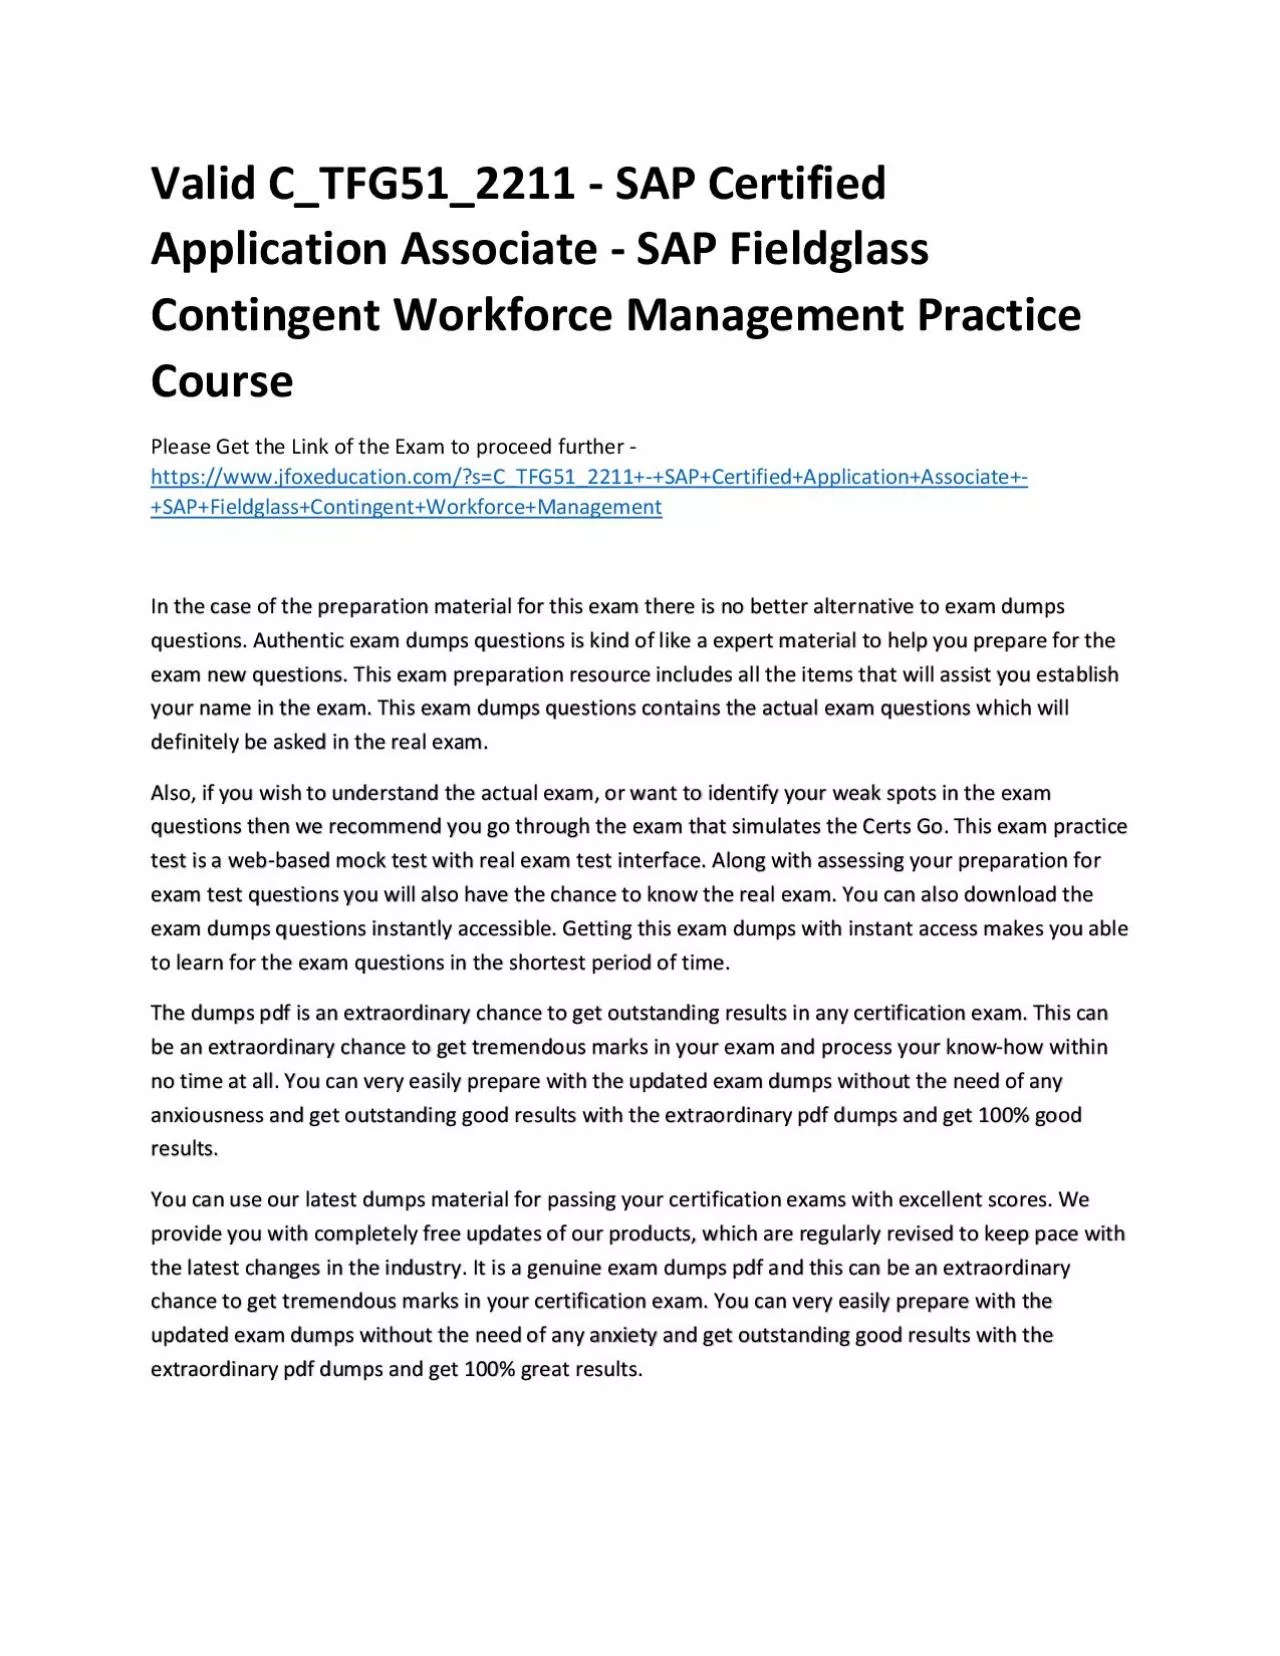 Valid C_TFG51_2211 - SAP Certified Application Associate - SAP Fieldglass Contingent Workforce